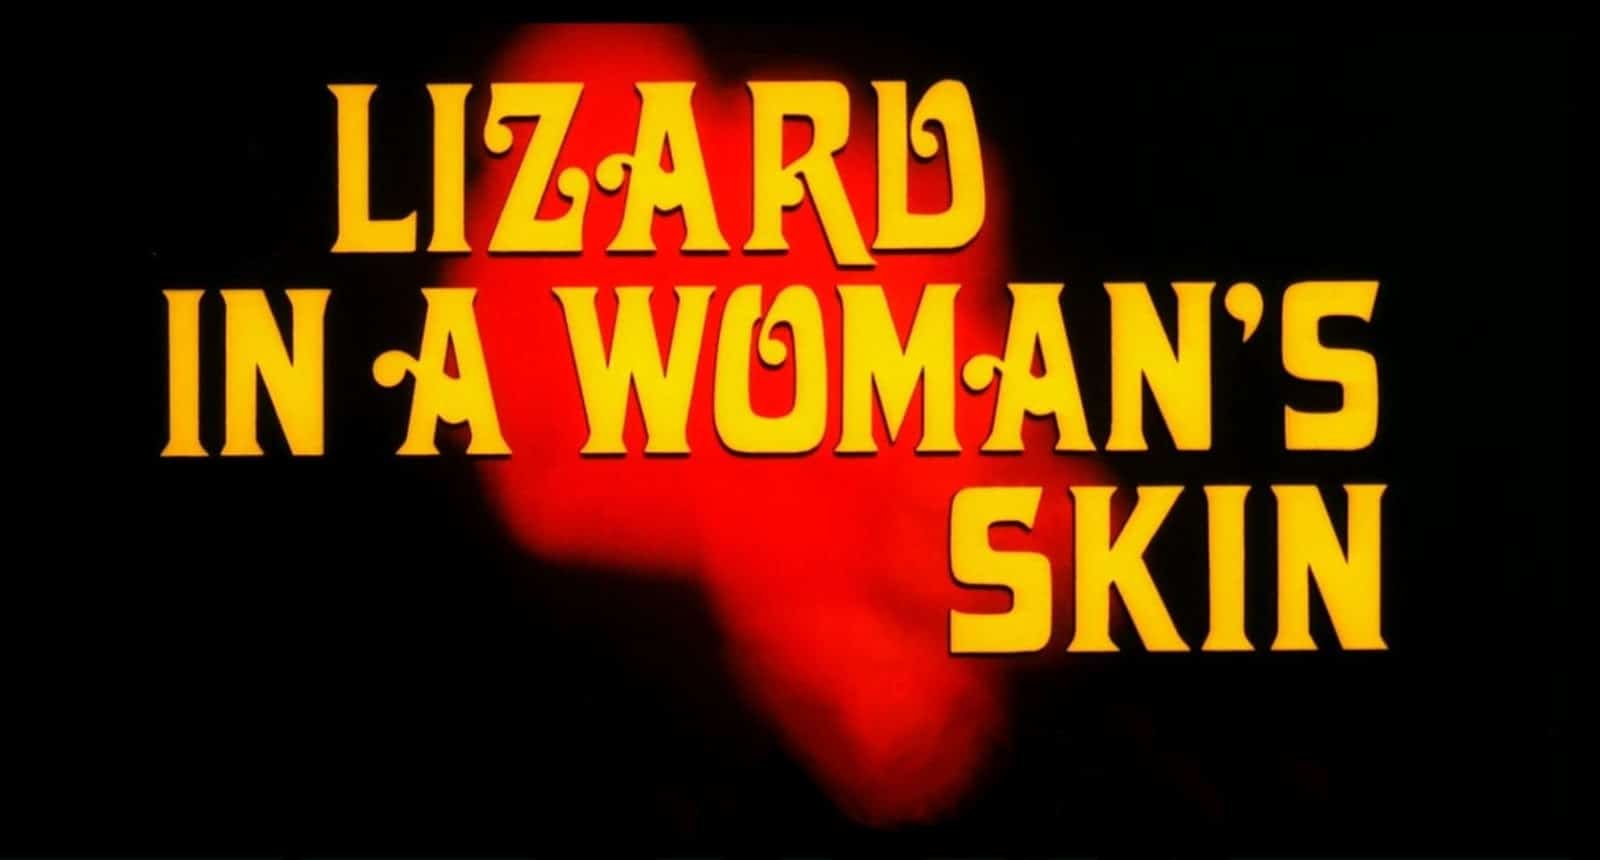 a lizard in a womans skin